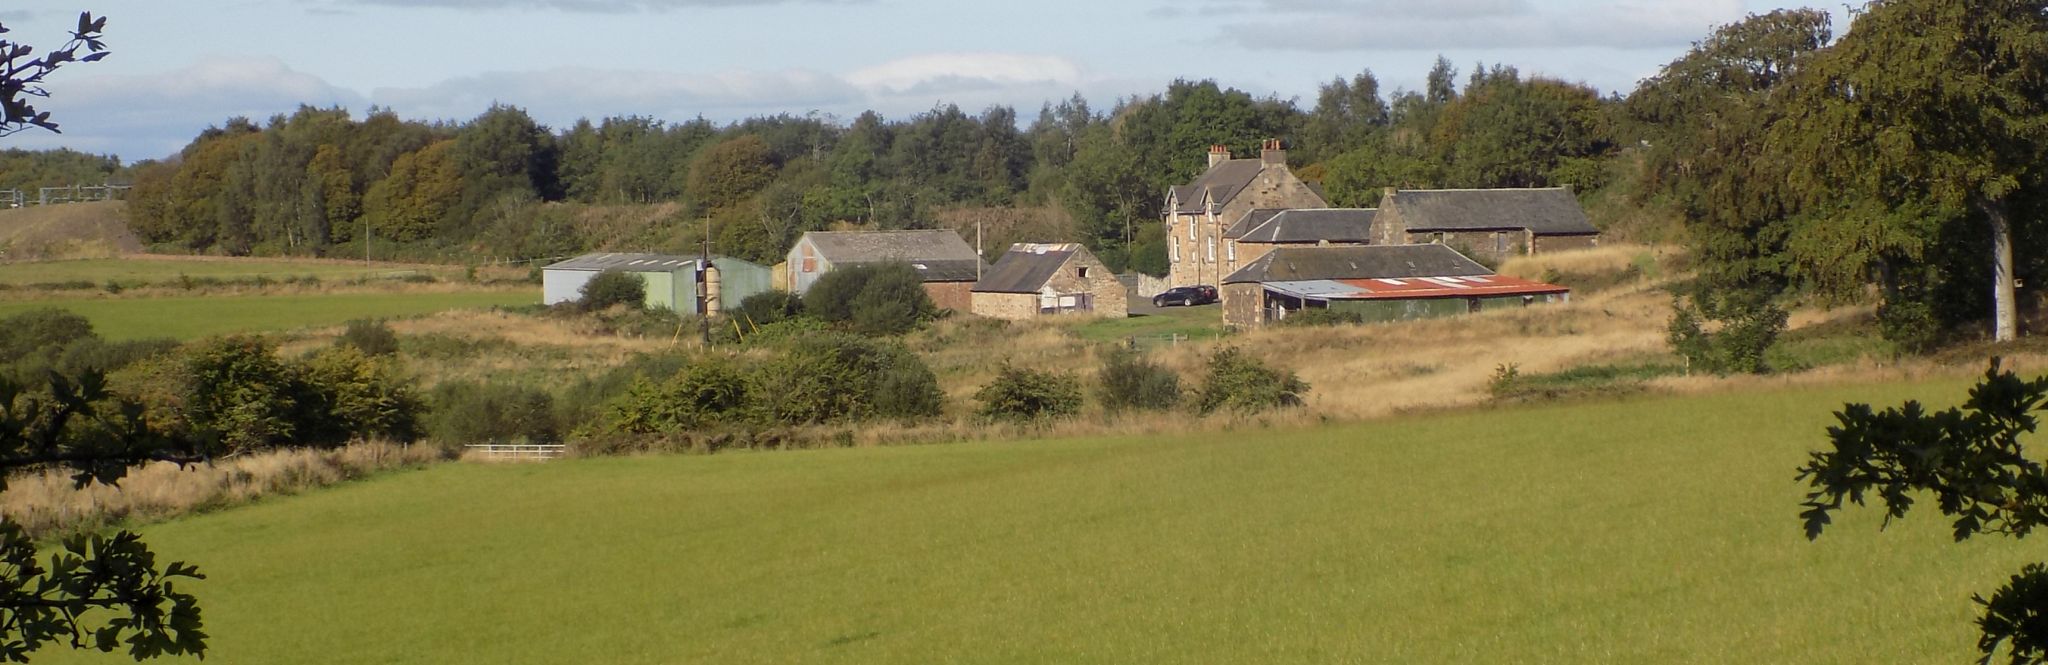 Loch Farm